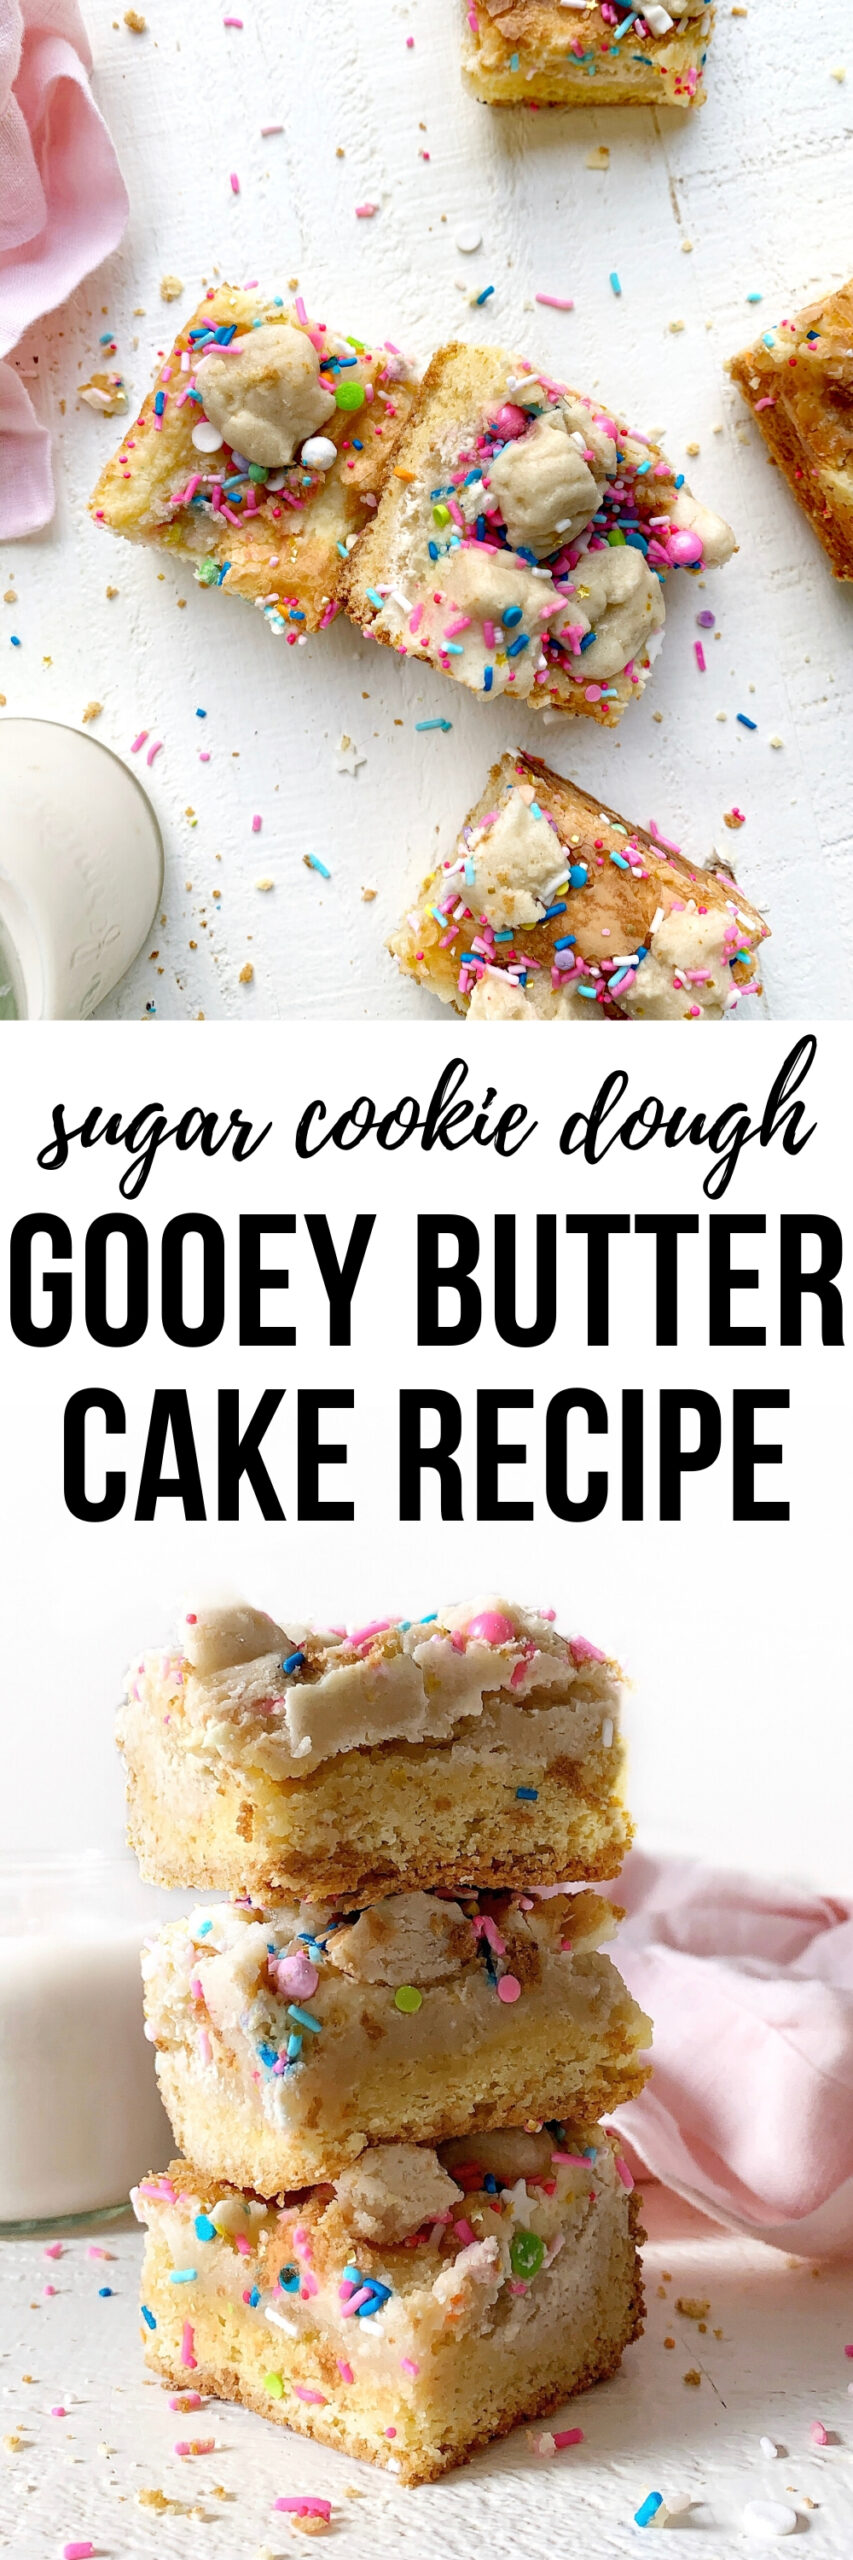 sugar cookie dough gooey butter cake recipe